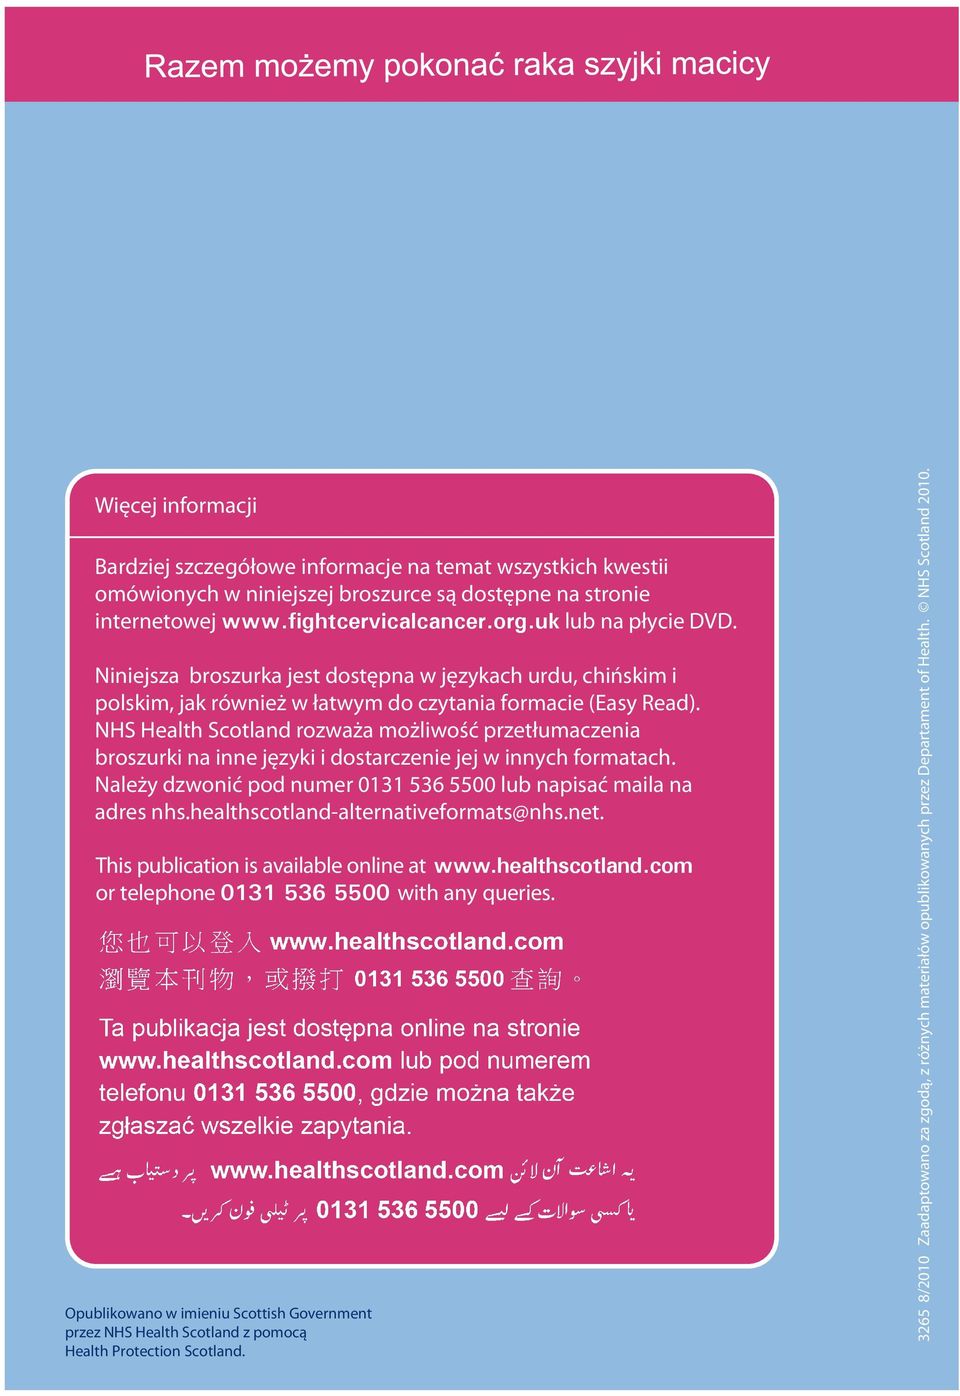 NHS Health Scotland rozważa możliwość przetłumaczenia broszurki na inne języki i dostarczenie jej w innych formatach. Należy dzwonić pod numer 0131 536 5500 lub napisać maila na adres nhs.